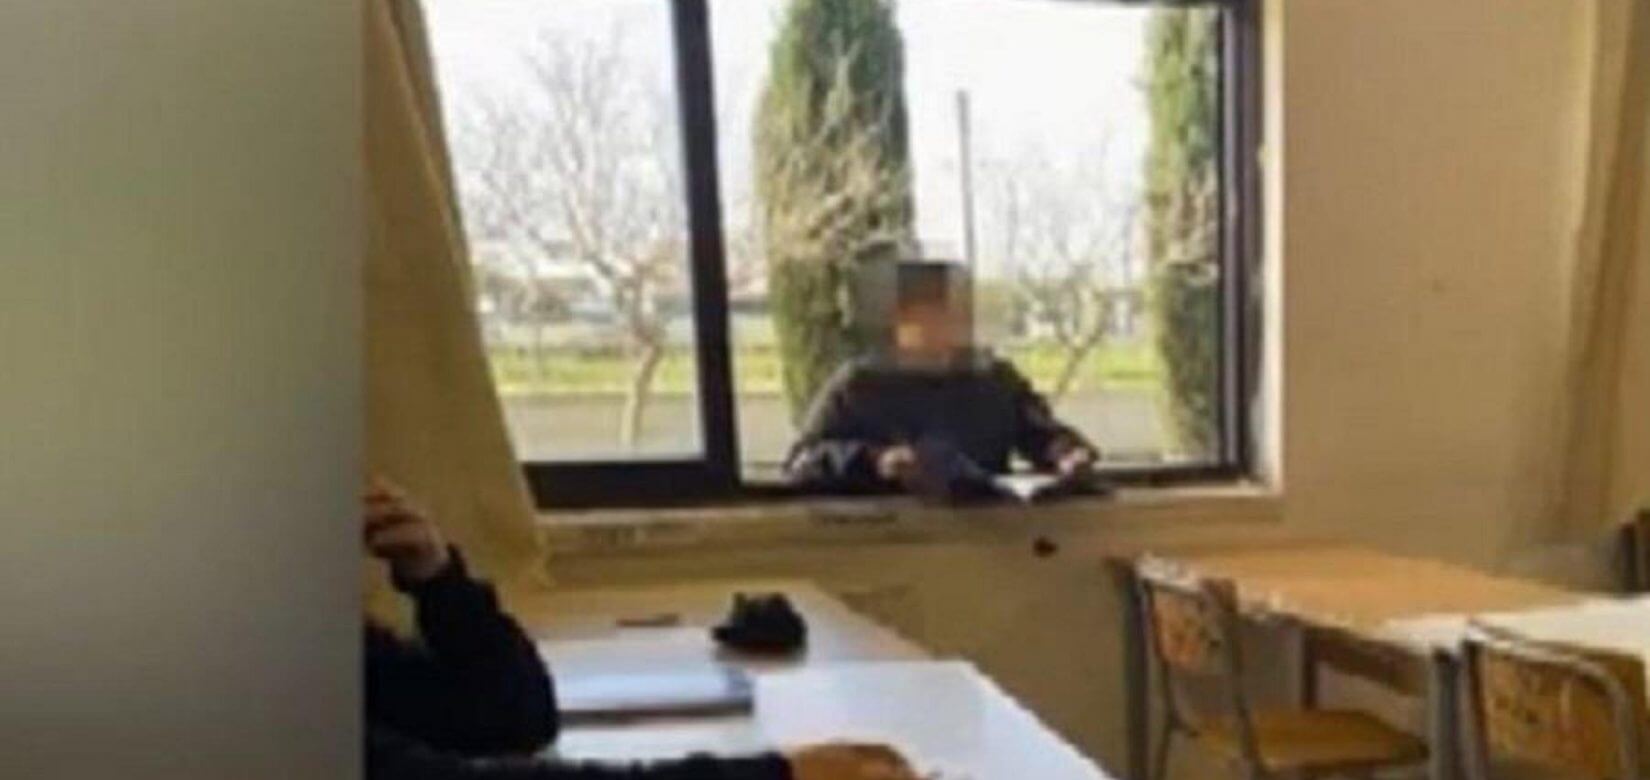 Κορονοϊός: Μαθητής παρακολουθεί μάθημα από το... παράθυρο του σχολείου